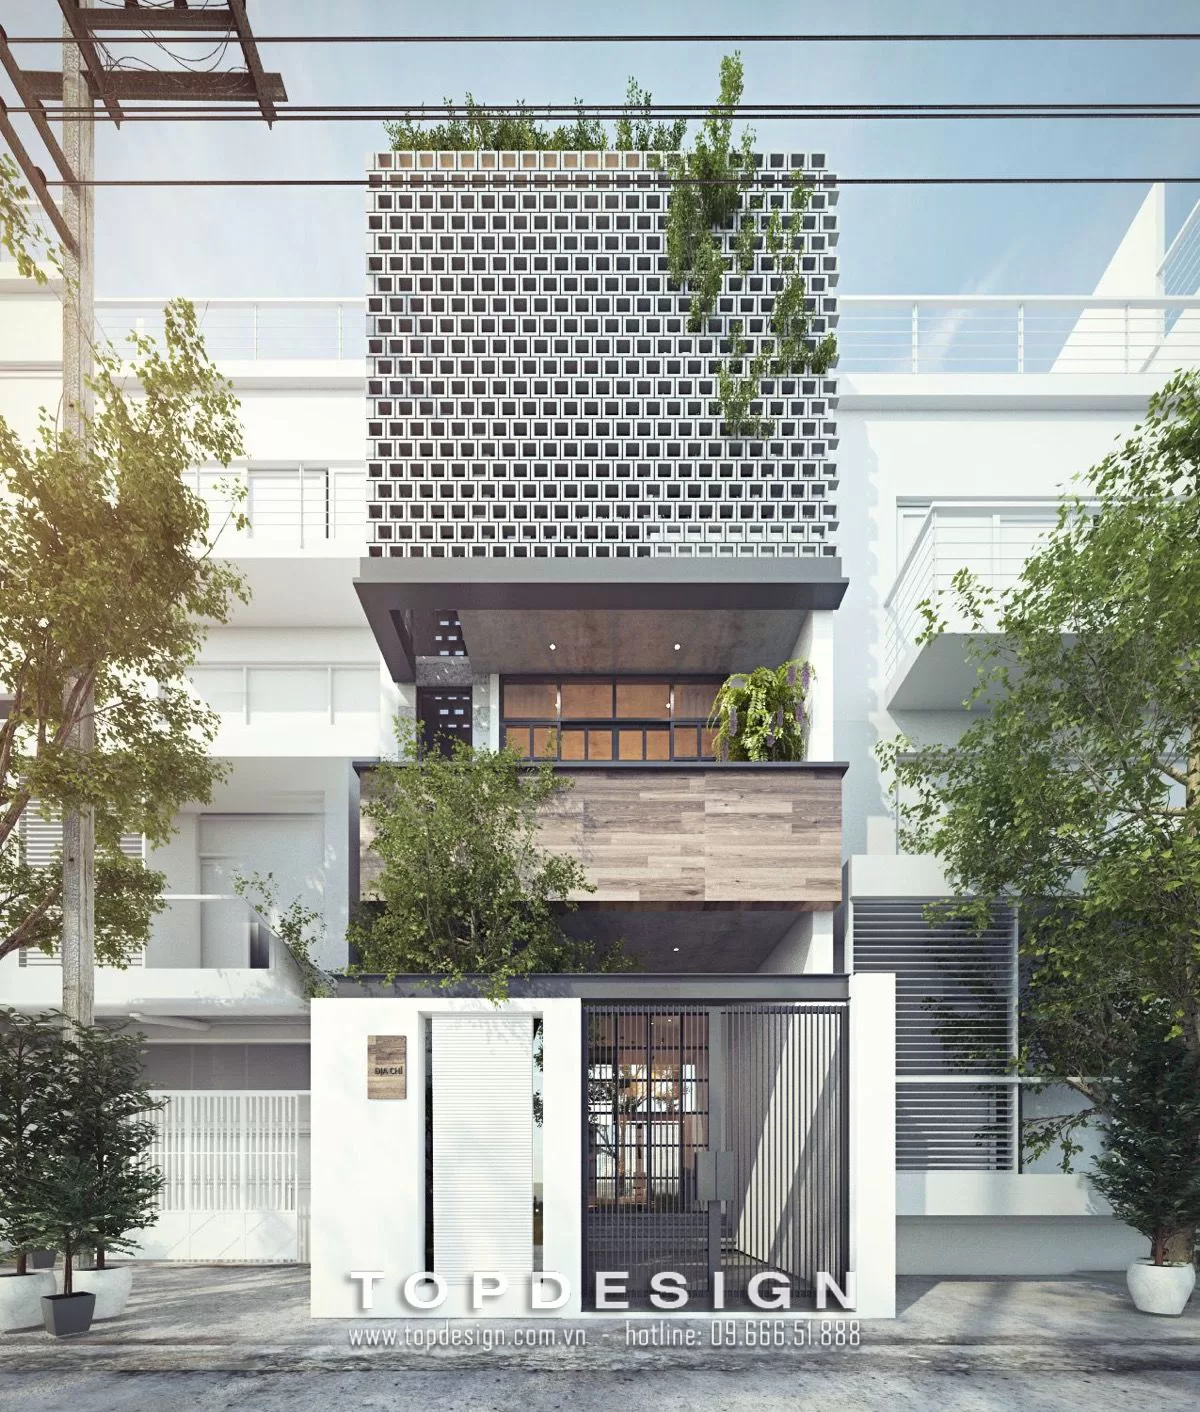 Mẫu thiết kế nhà phố 3 tầng - topdesign - 11